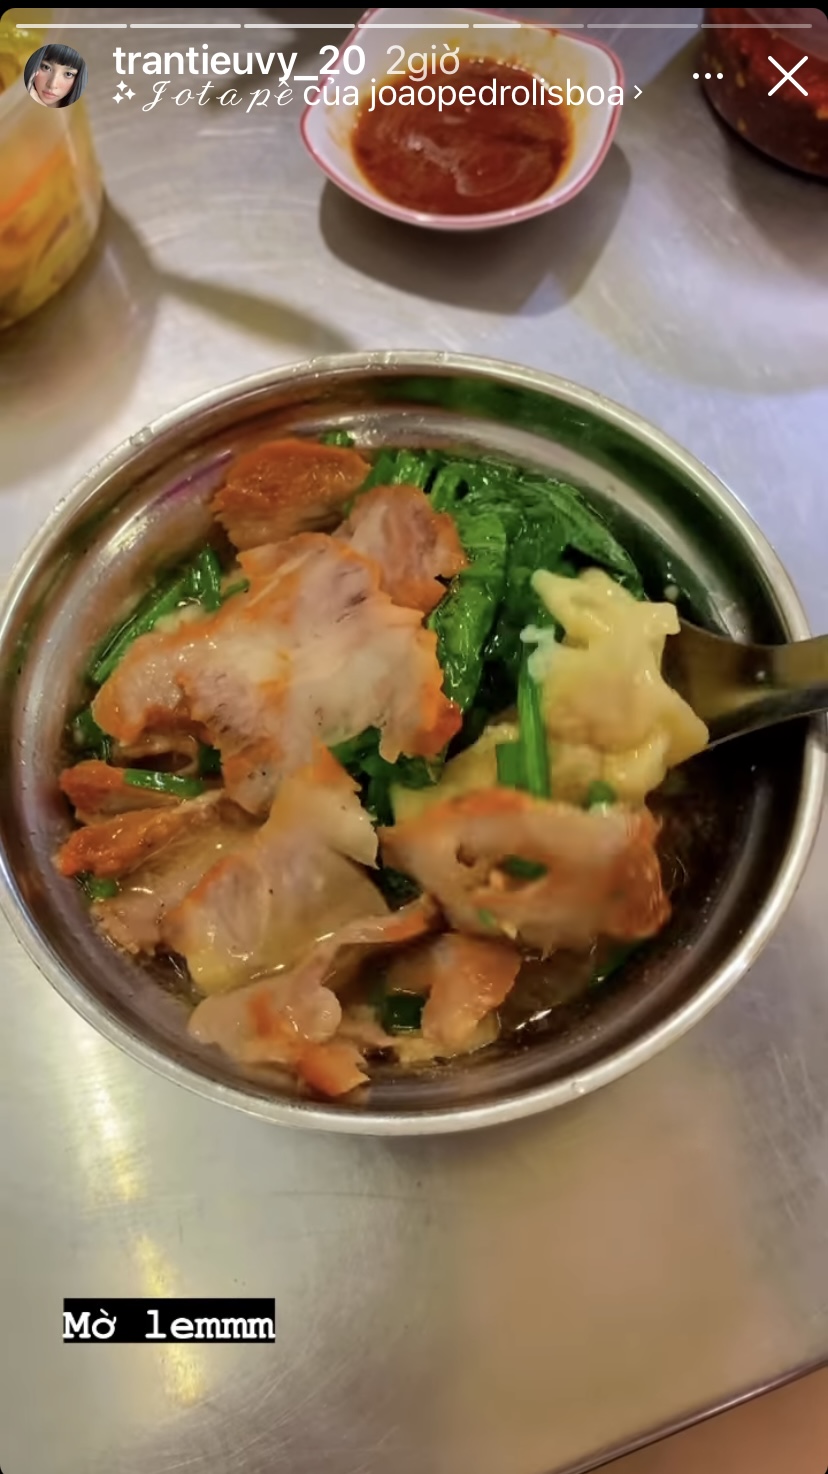 Một nàng hậu khác là Trần Tiểu Vy cũng có một bữa ăn hấp dẫn với một bát mì ngập topping như thịt, rau cải và hoành thánh.